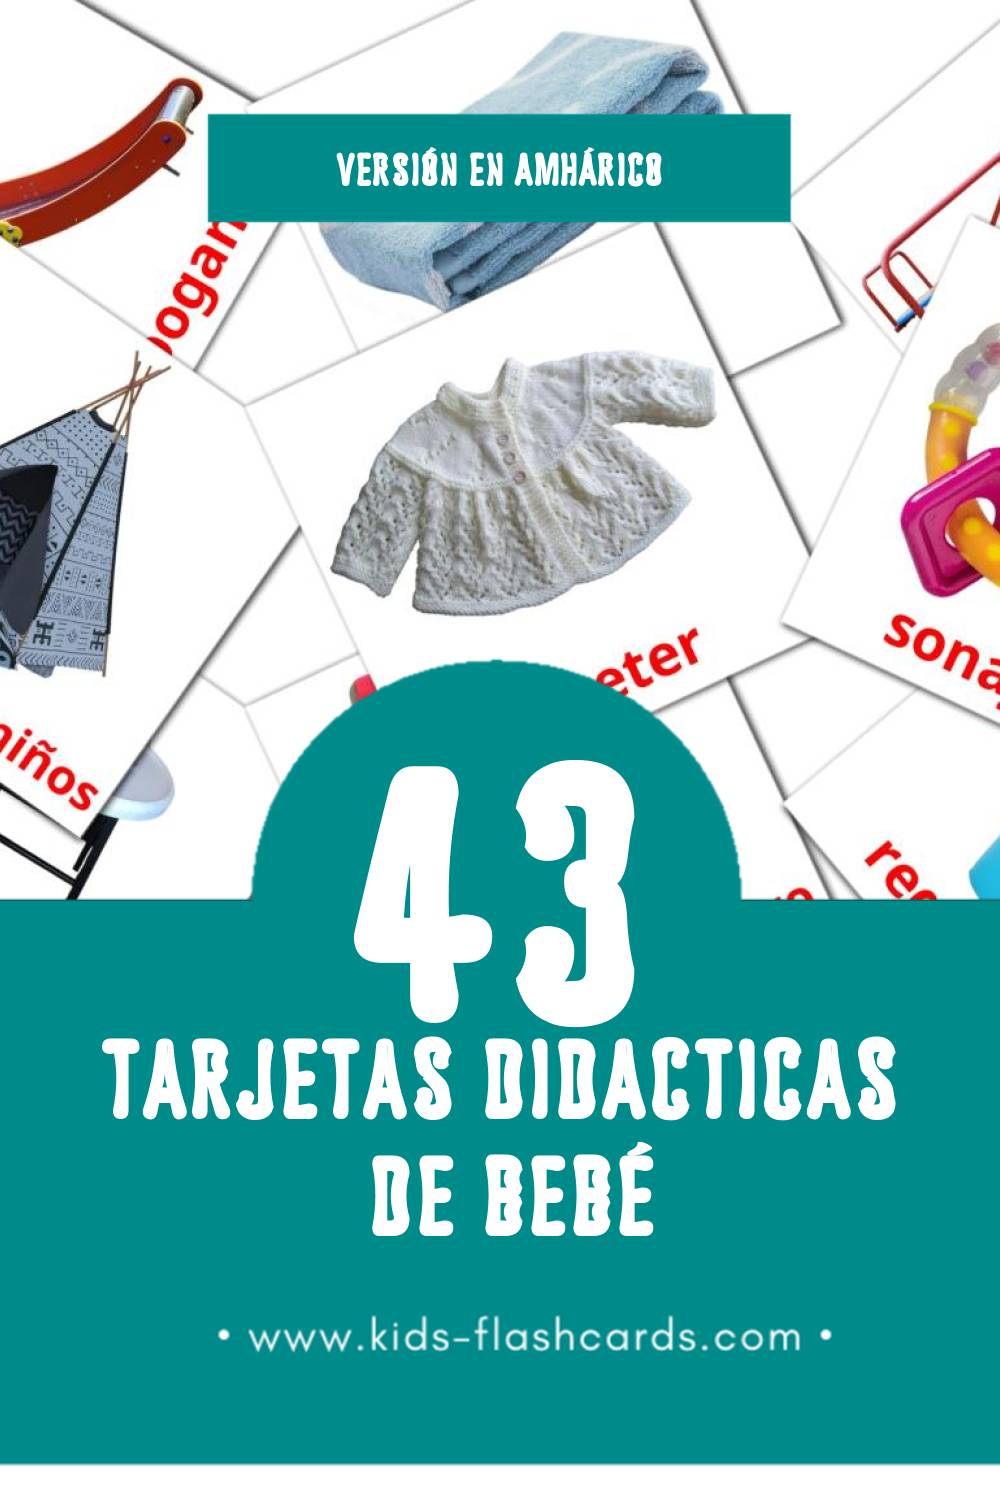 Tarjetas visuales de Bebê  para niños pequeños (32 tarjetas en Amhárico)